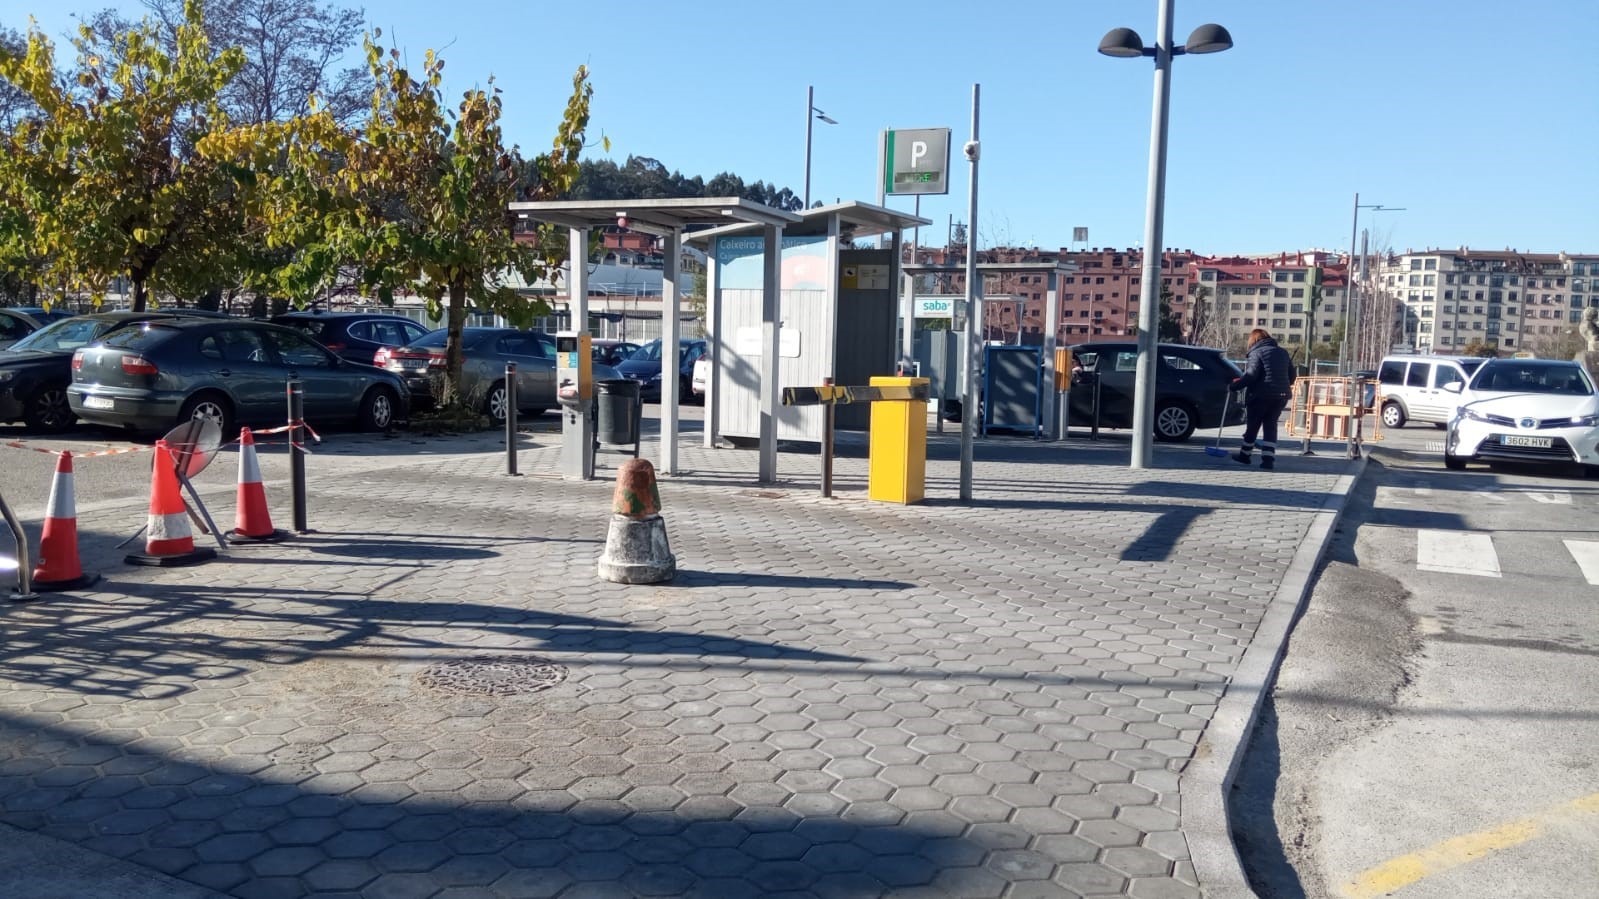 Parking Saba Estación Tren Pontevedra